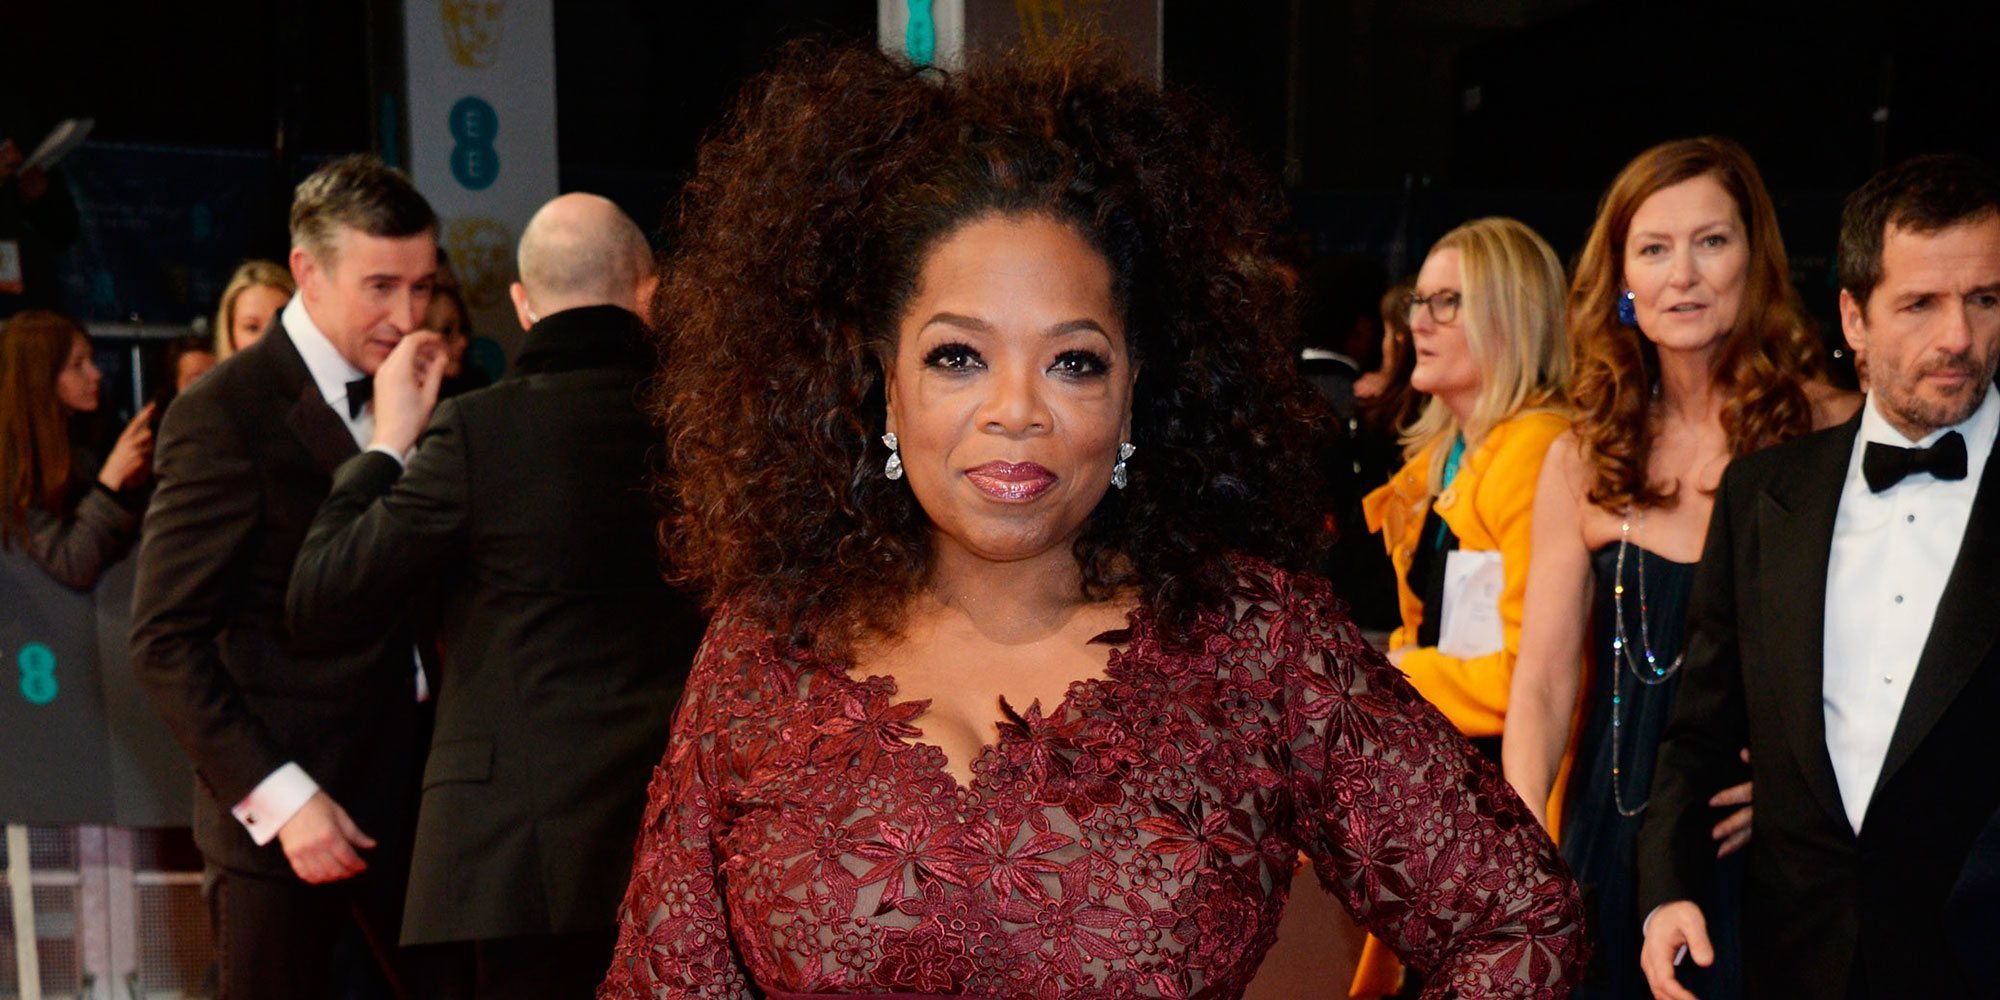 La extraña dolencia que provocó que Oprah Winfrey se replanteara su vida: "No podía creerlo"